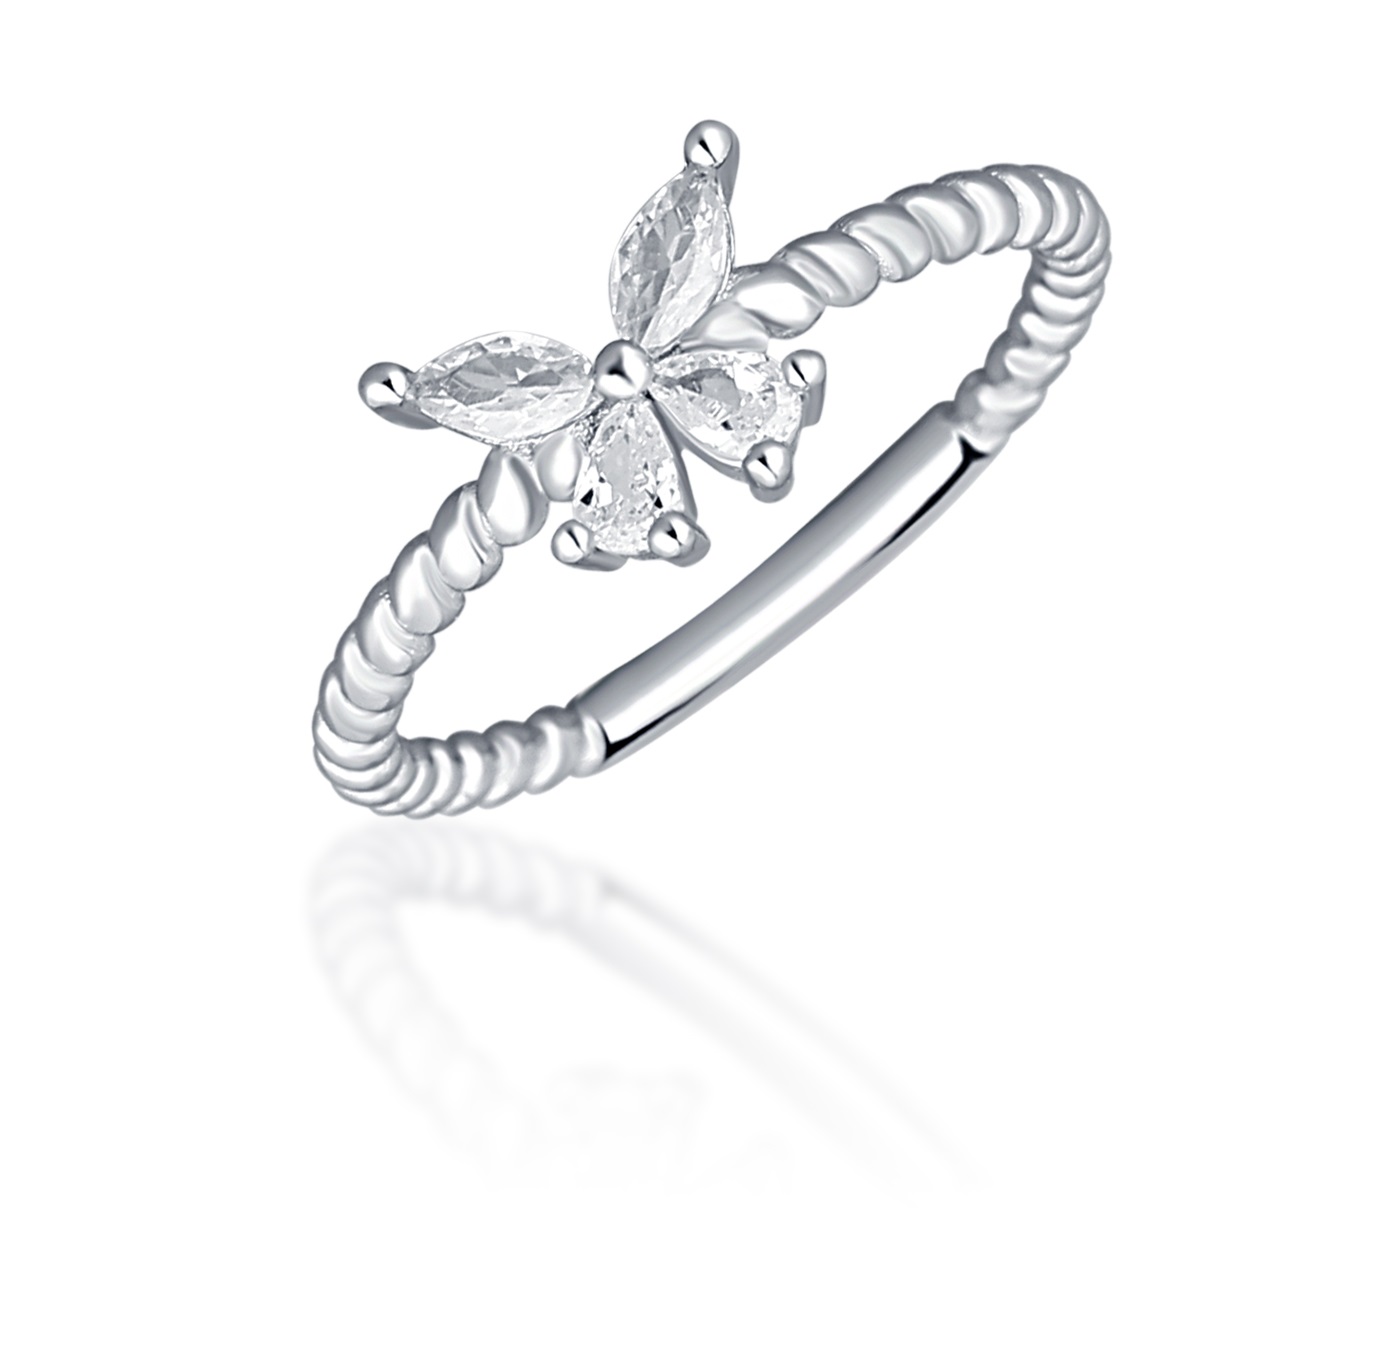 JVD Blyštivý stříbrný prsten s motýlkem SVLR0744XI2BI 56 mm